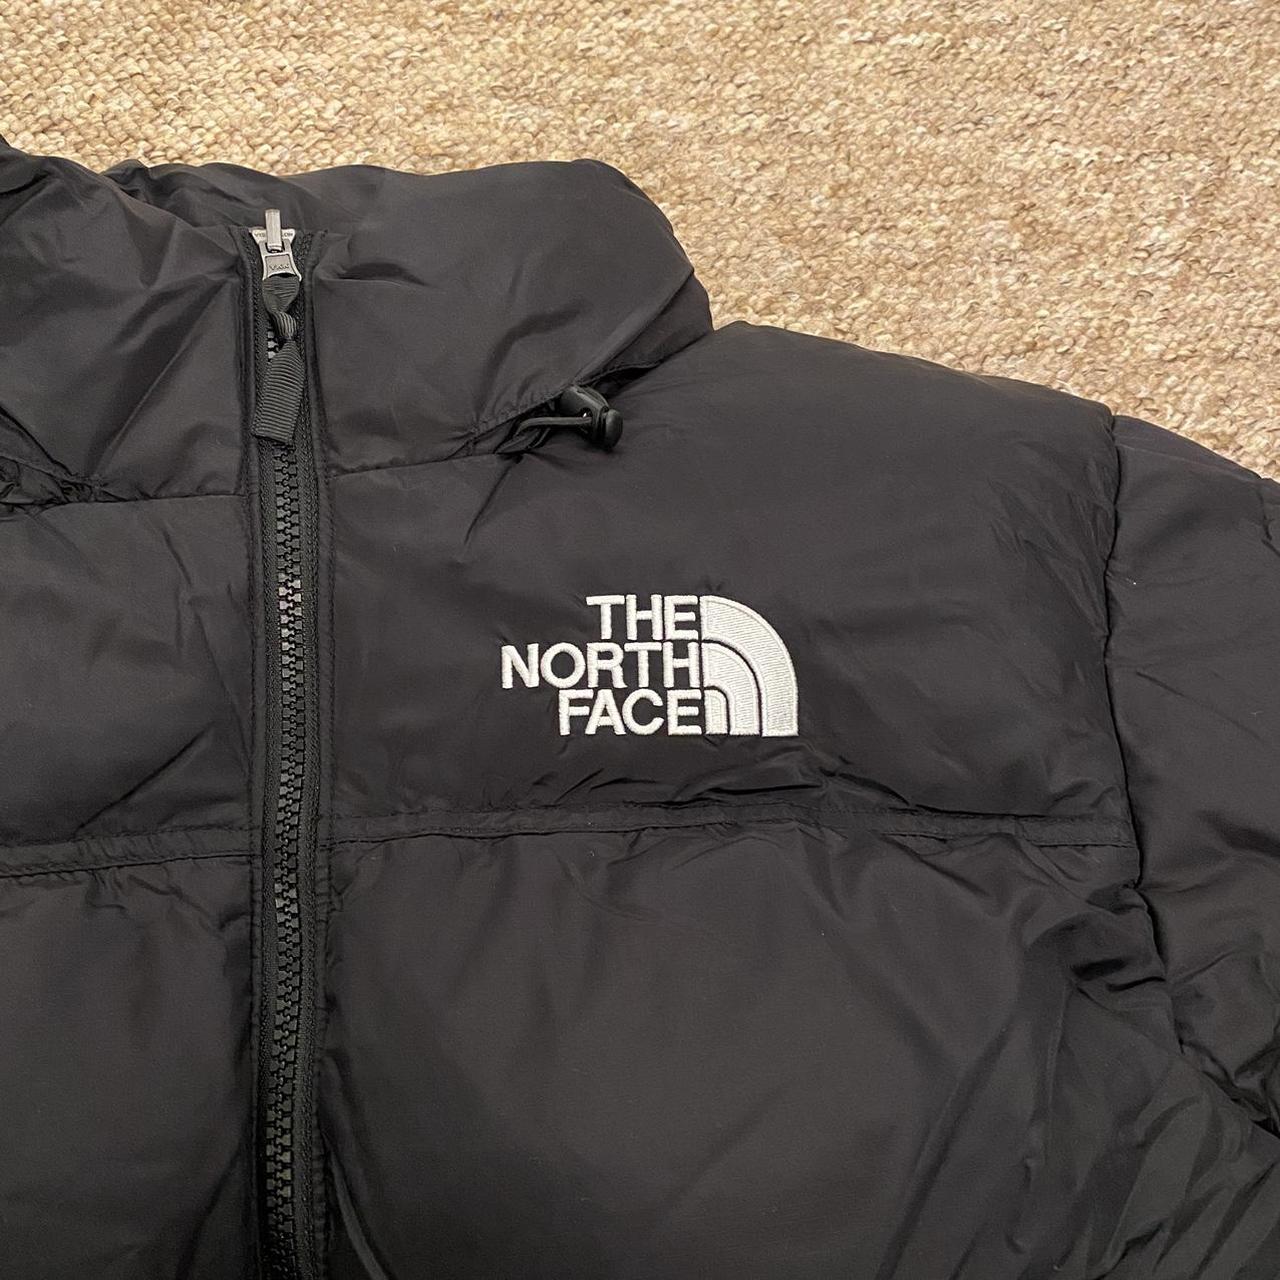 The North Face 1996 Retro Nuptse Jacket 700 Price:... - Depop